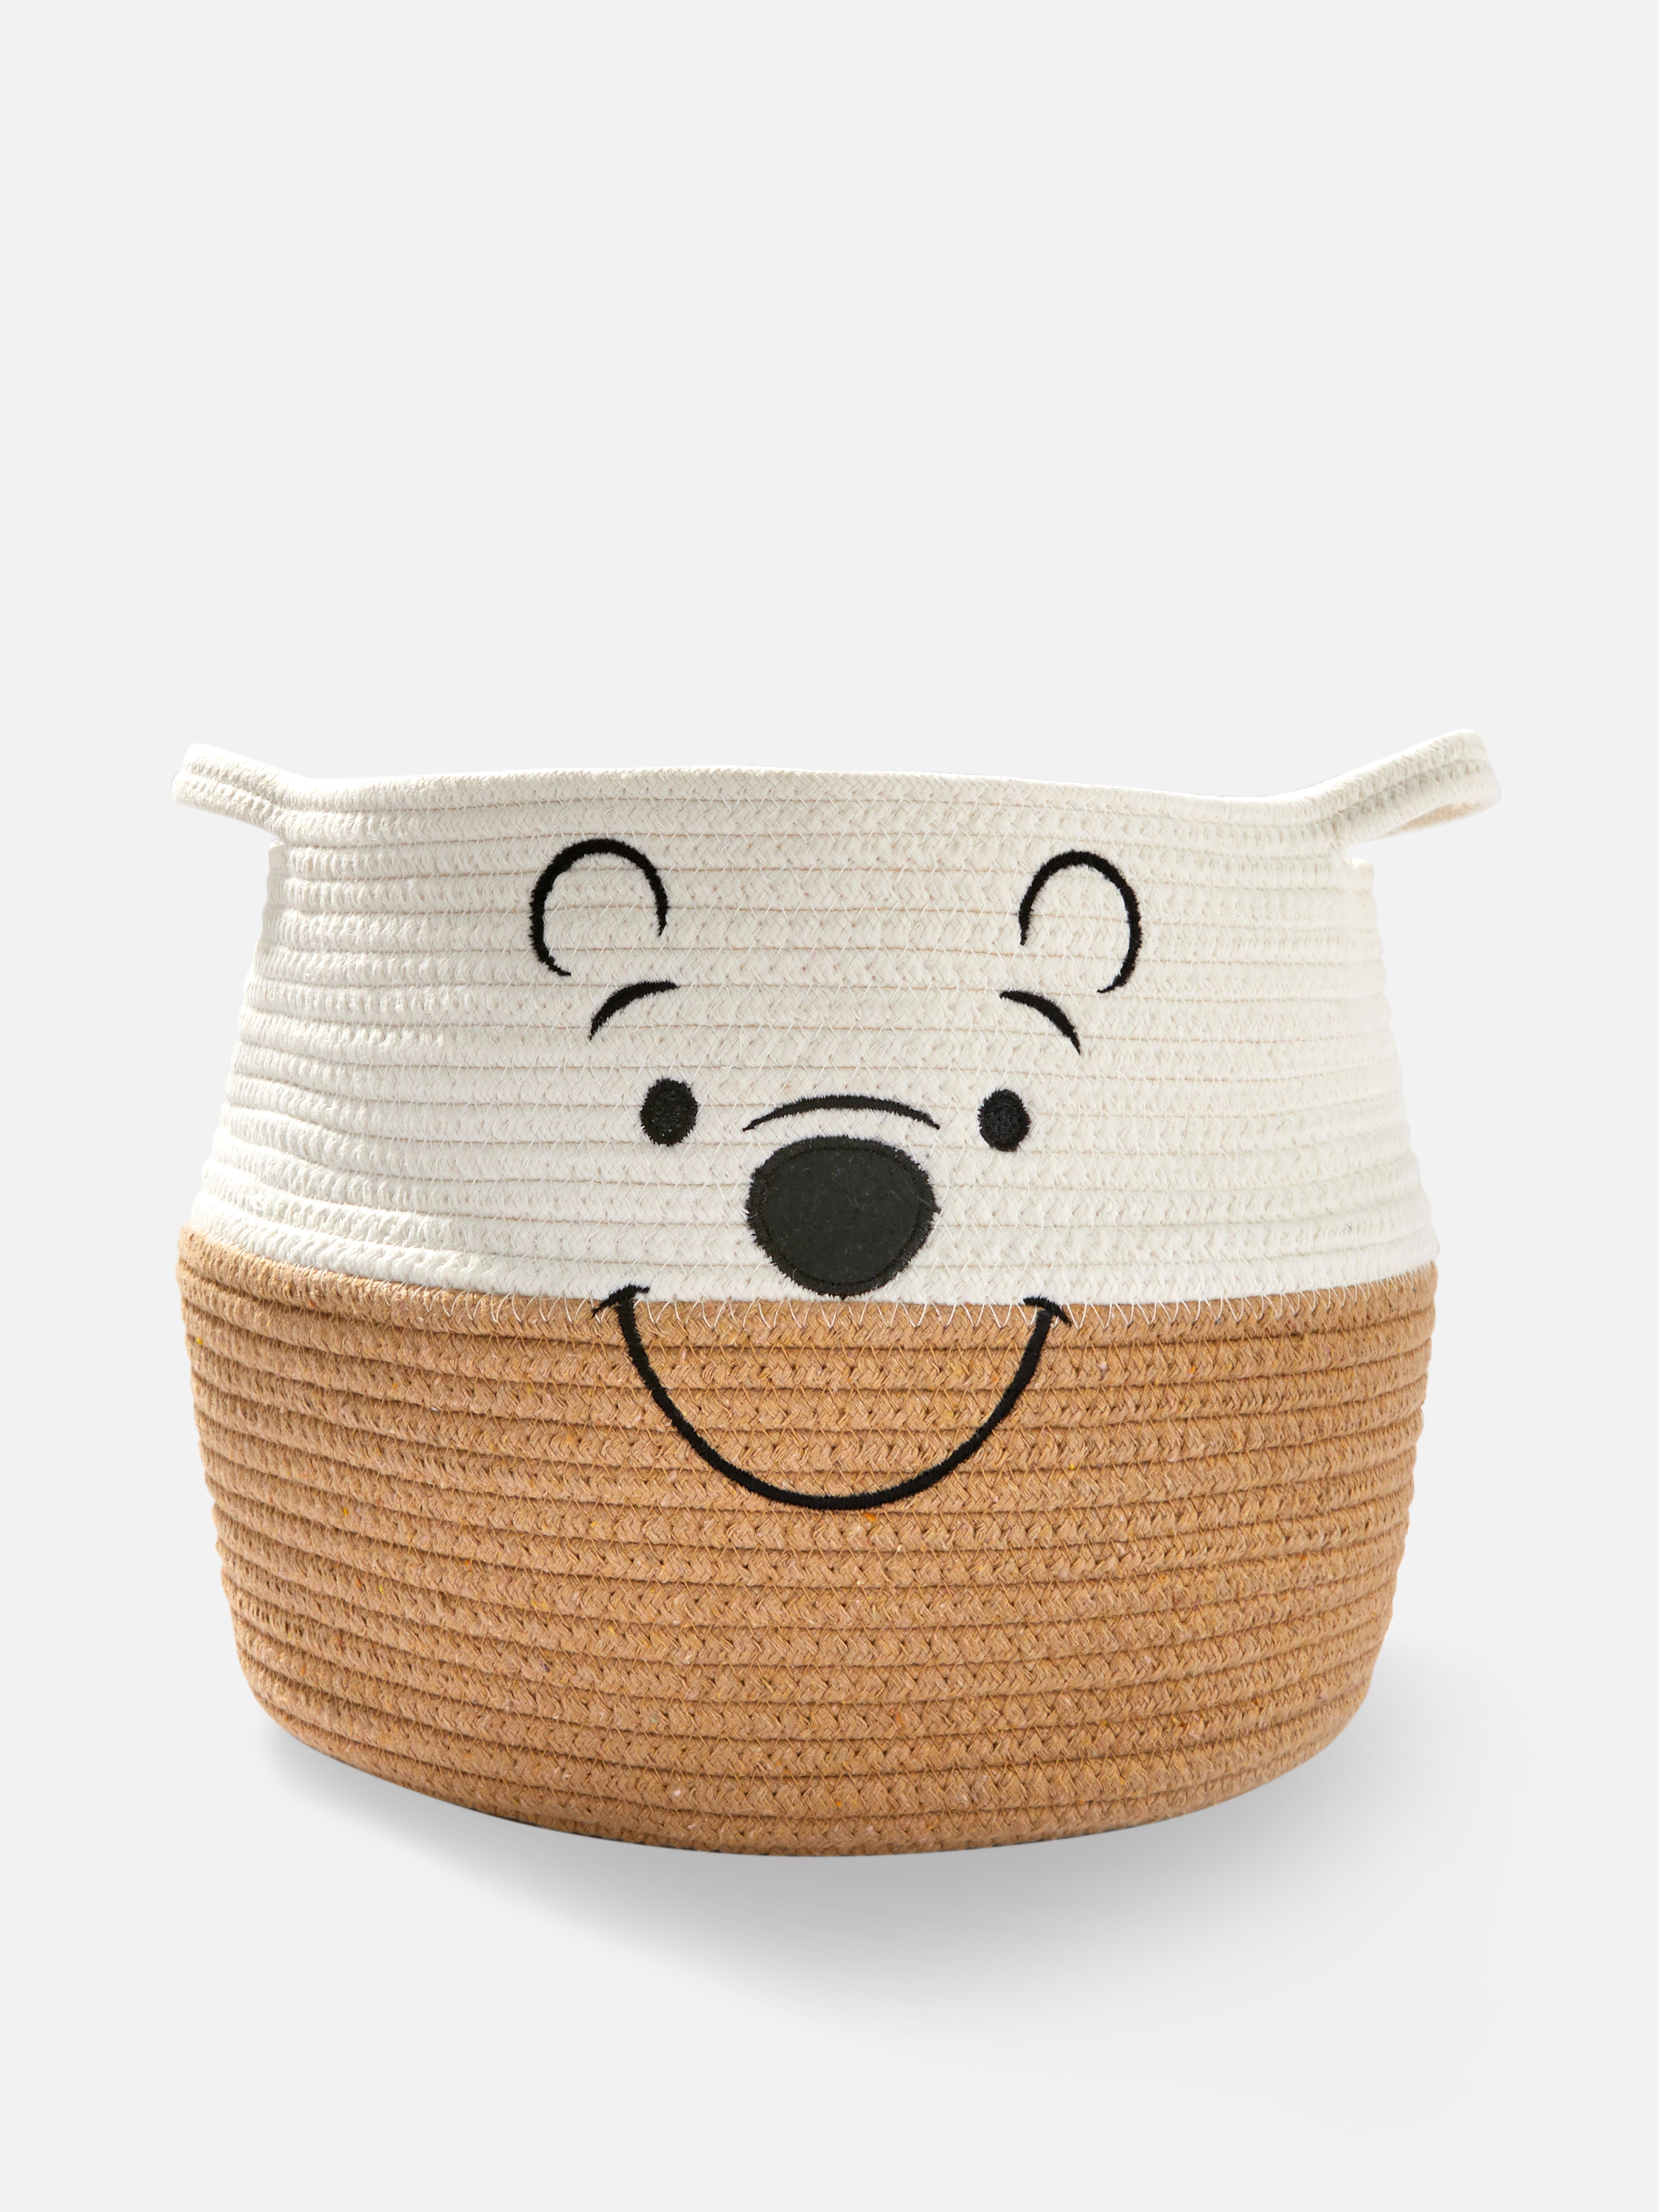 Disney’s Winnie The Pooh Rope Basket